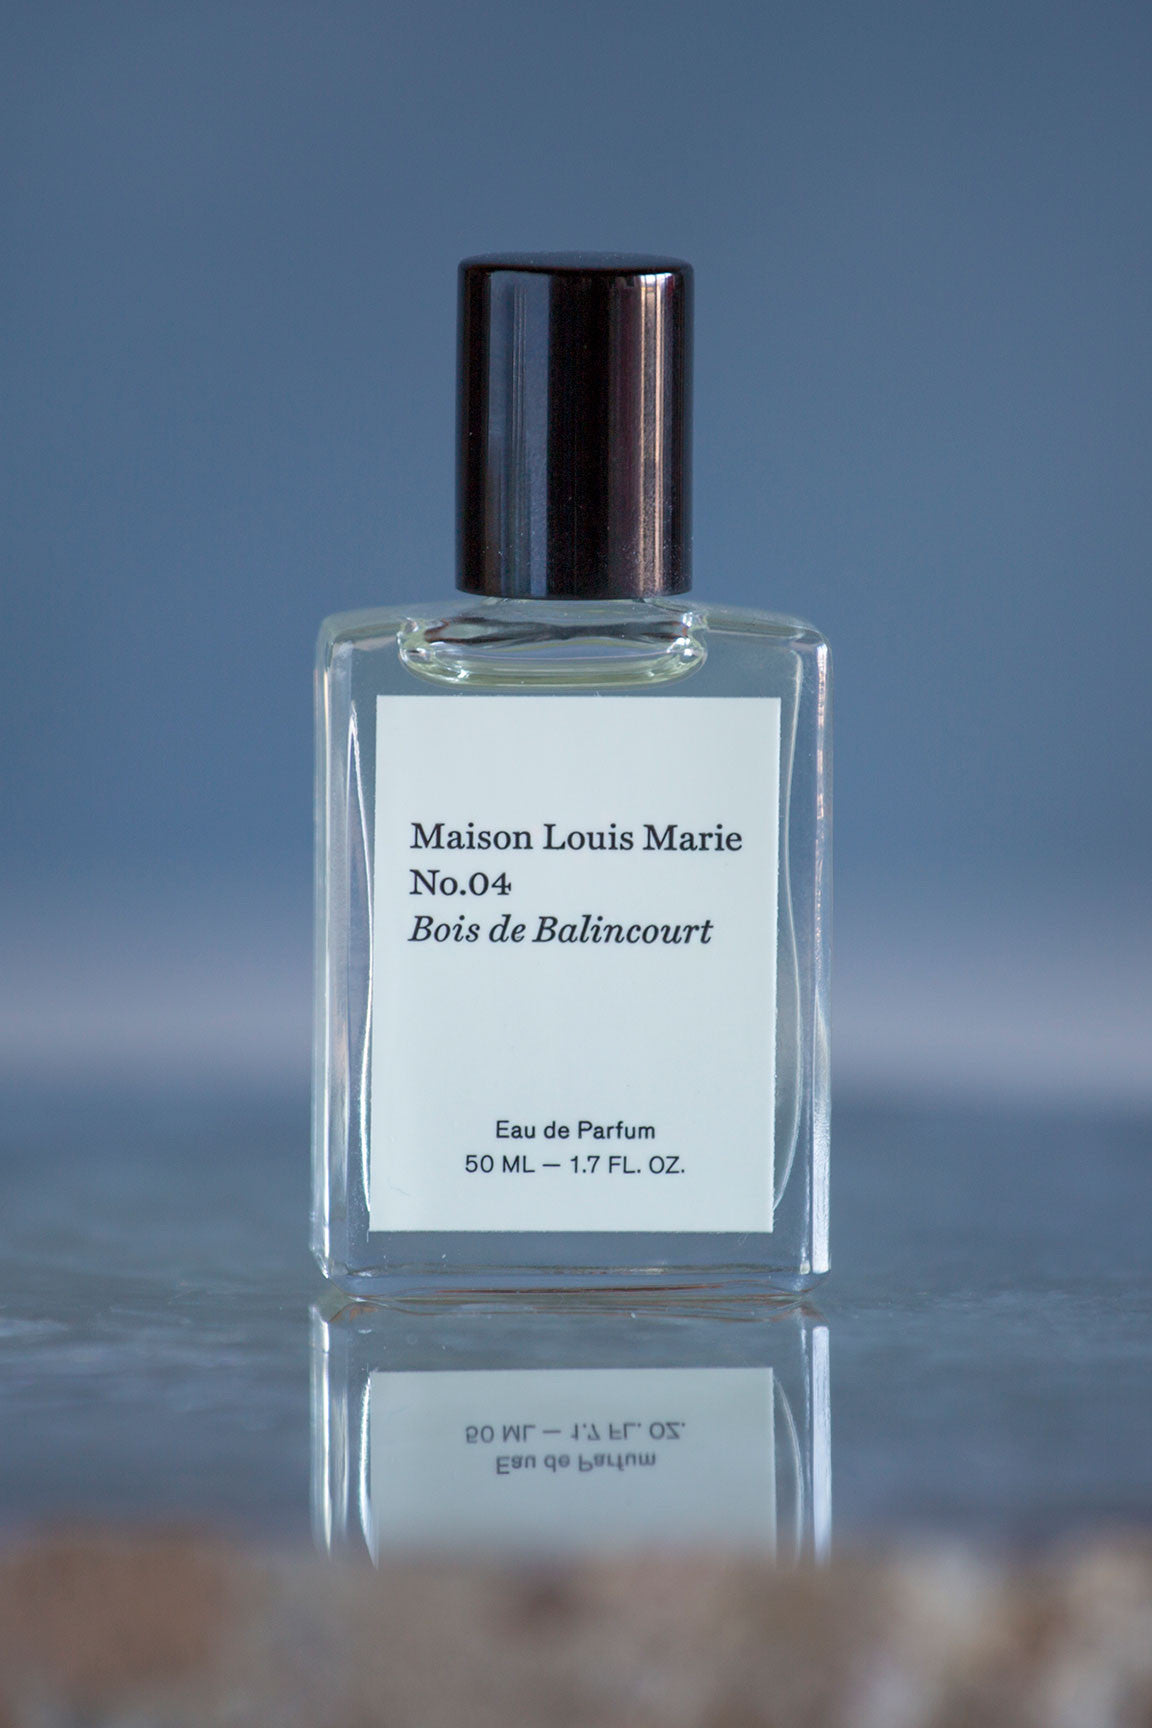 Maison Louis Marie No.04 Bois de Balincourt Eau de Parfum